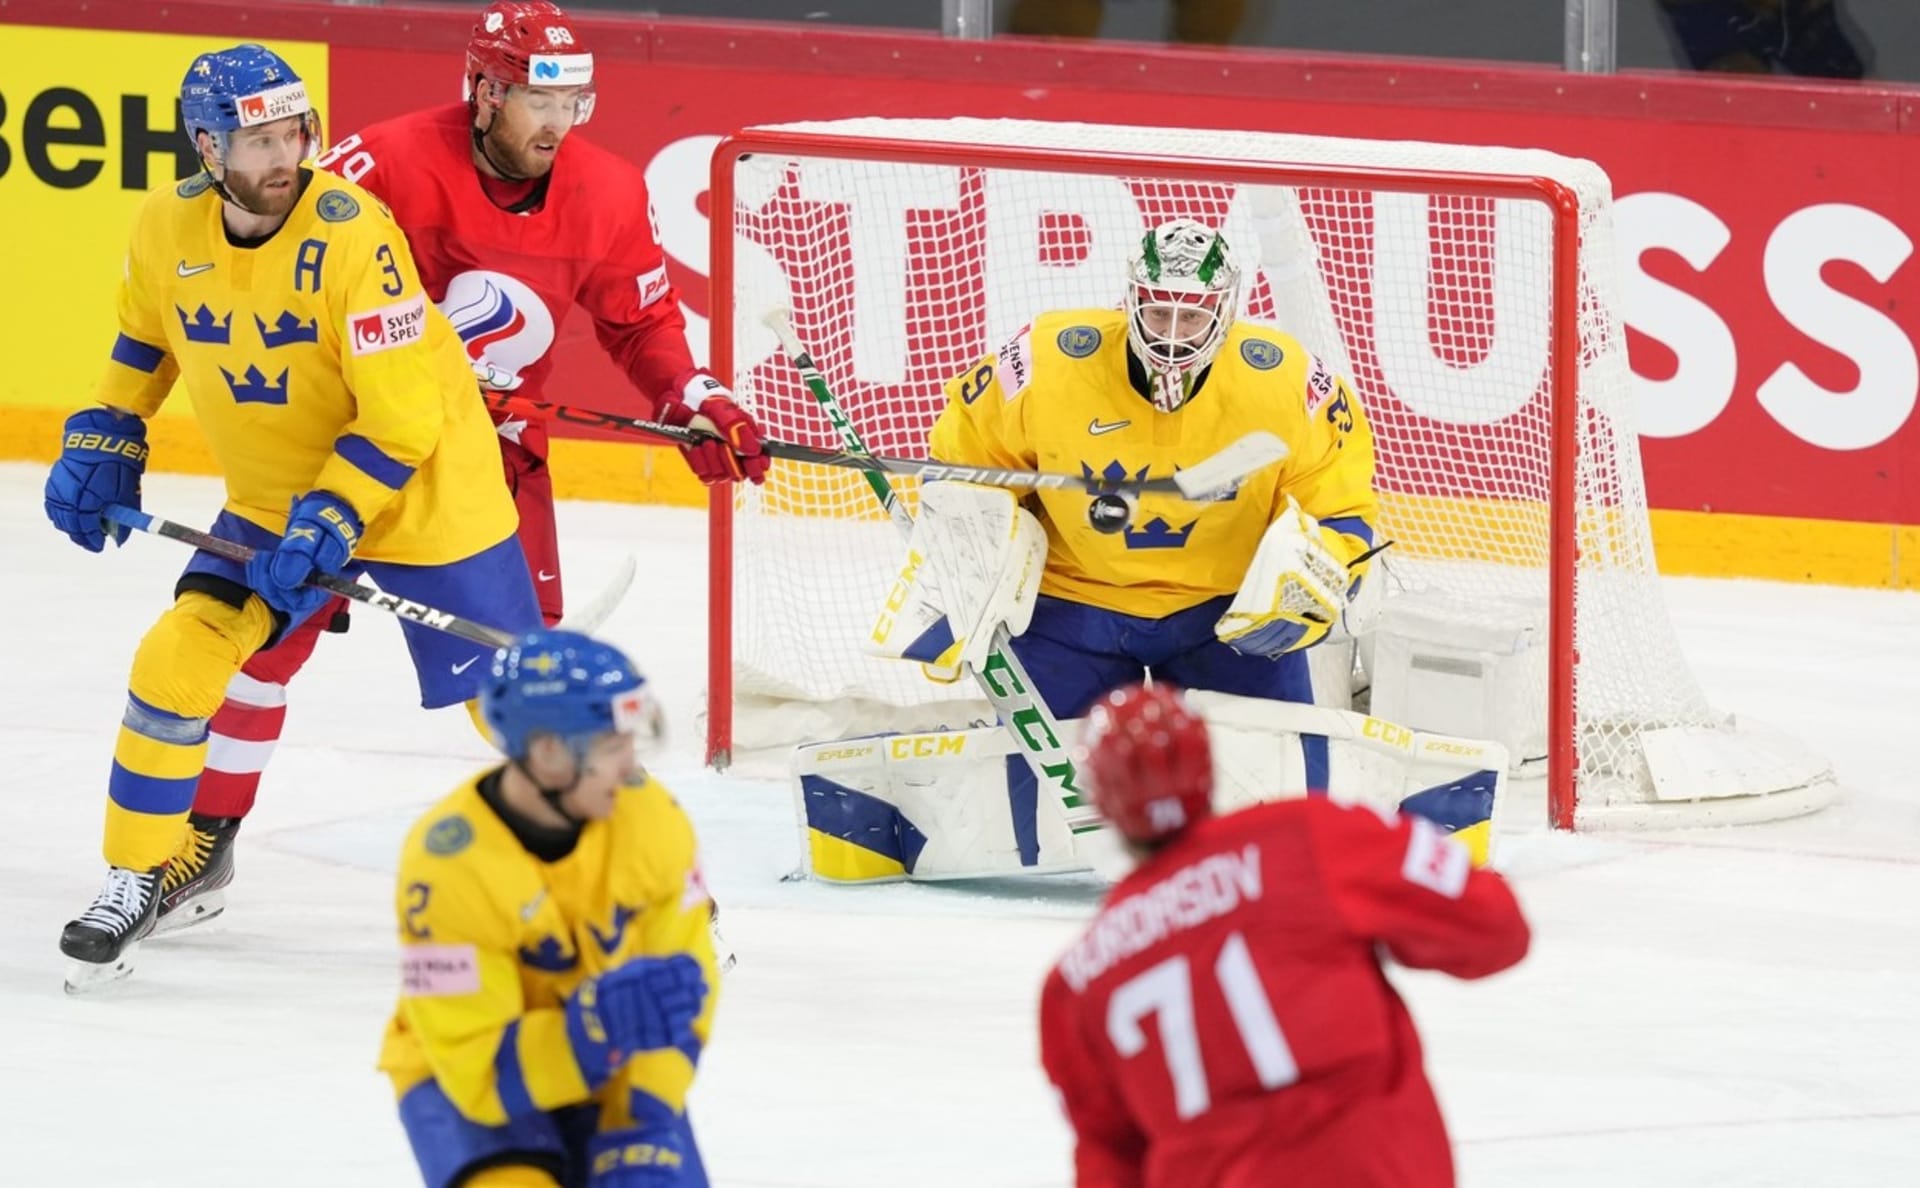 Rusko porazilo švédský výběr na nájezdy 3:2, díky čemuž česká reprezentace postupuje ze skupiny bez ohledu na výsledek z úterního utkání se Slovenskem.